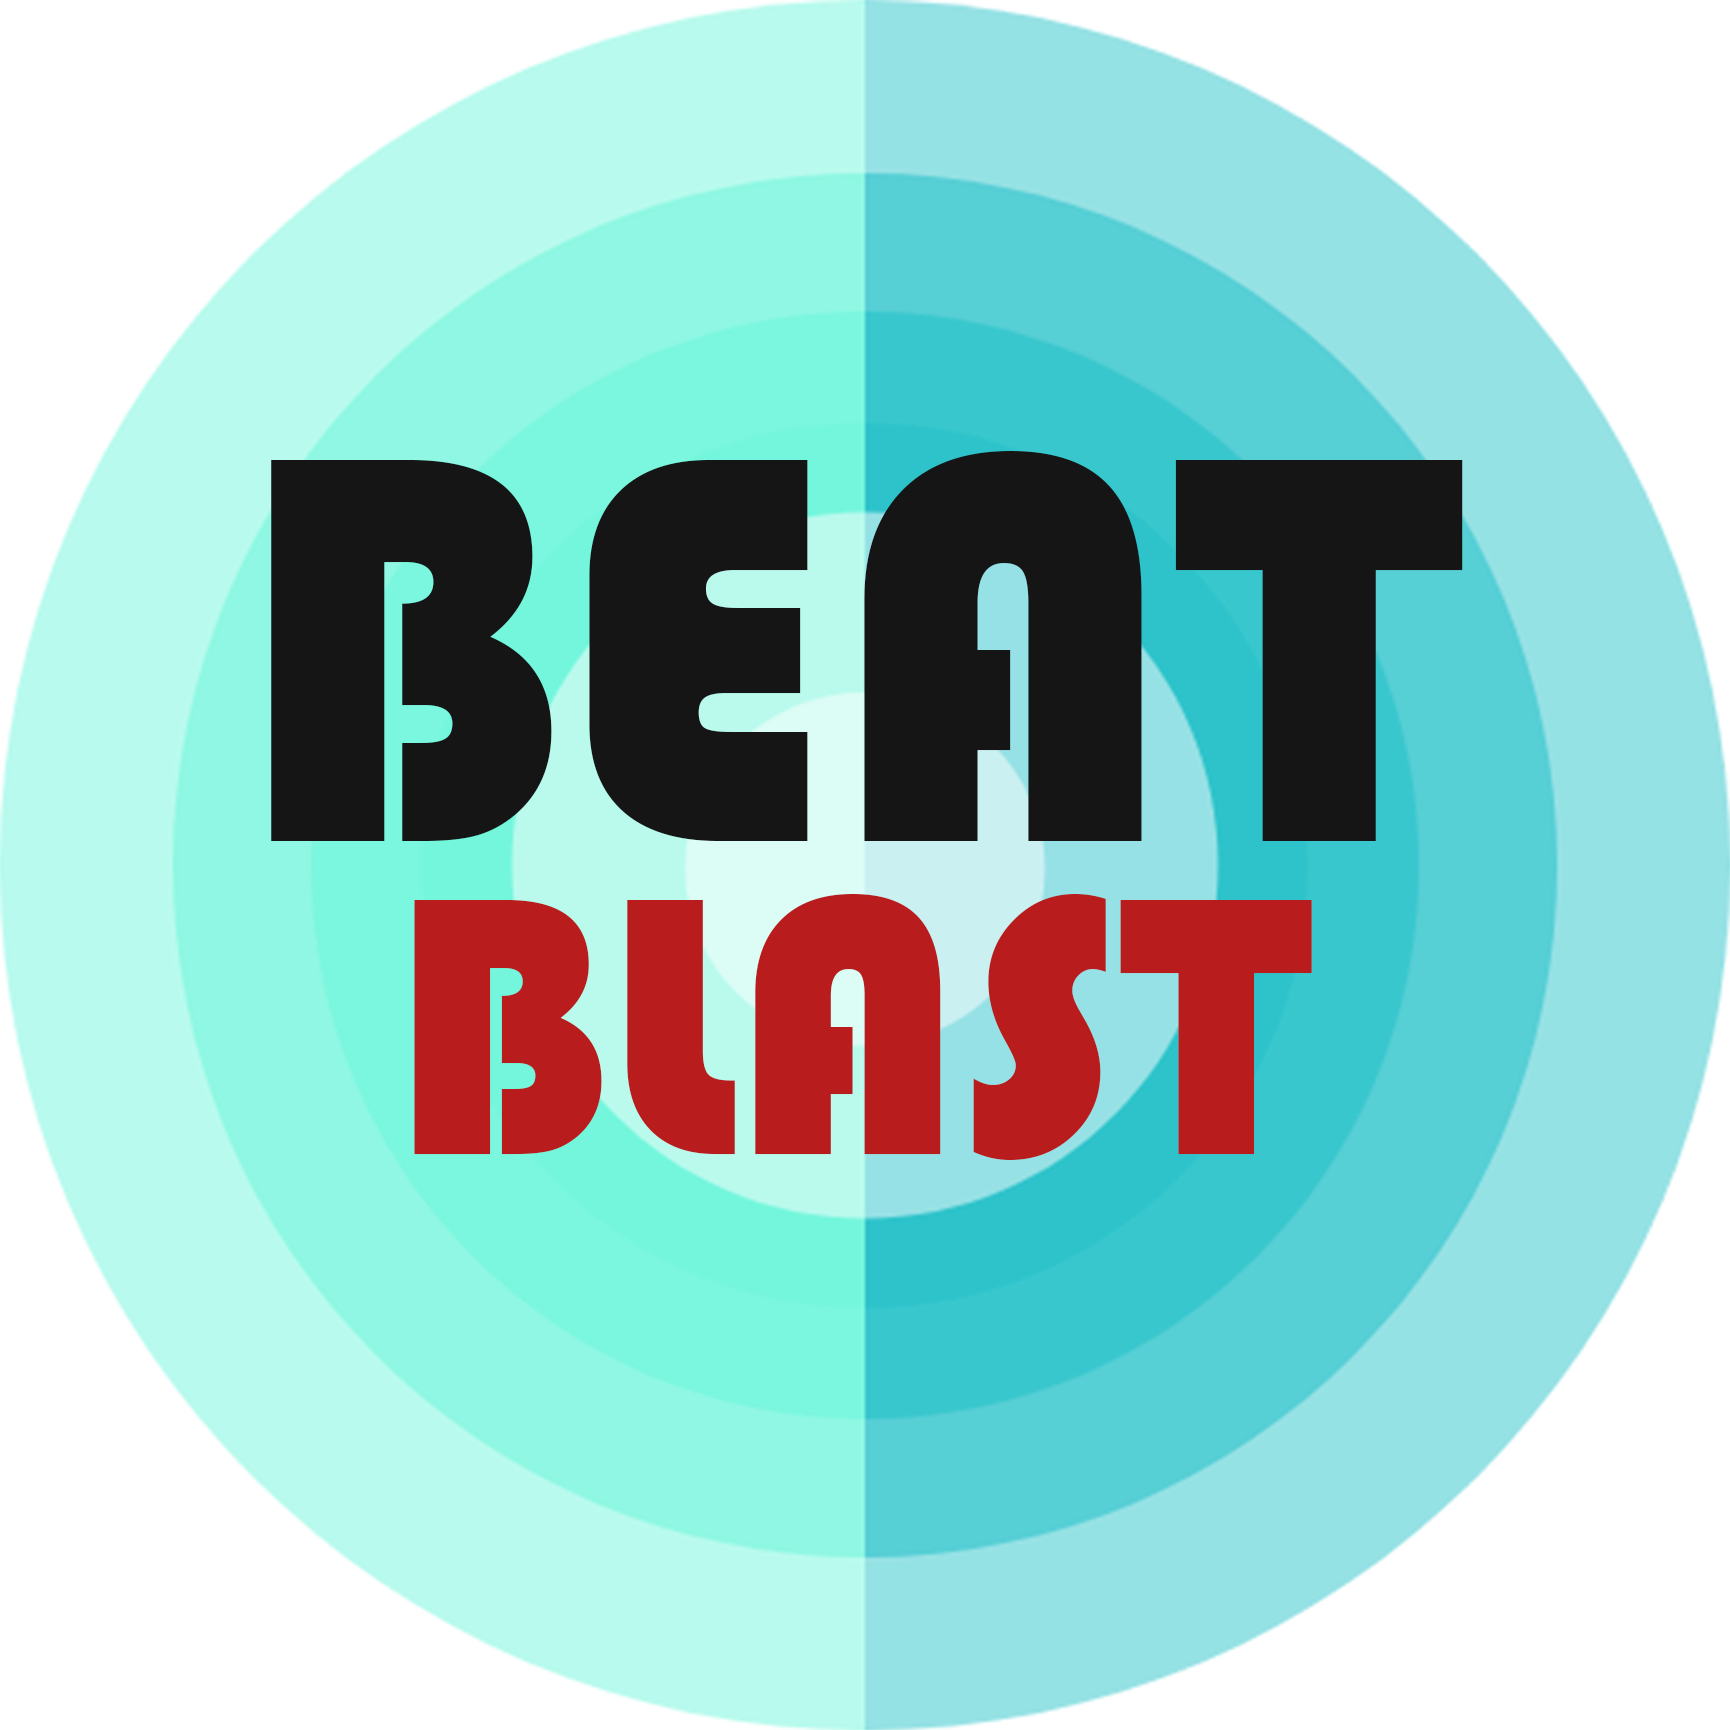 beat blast lost love